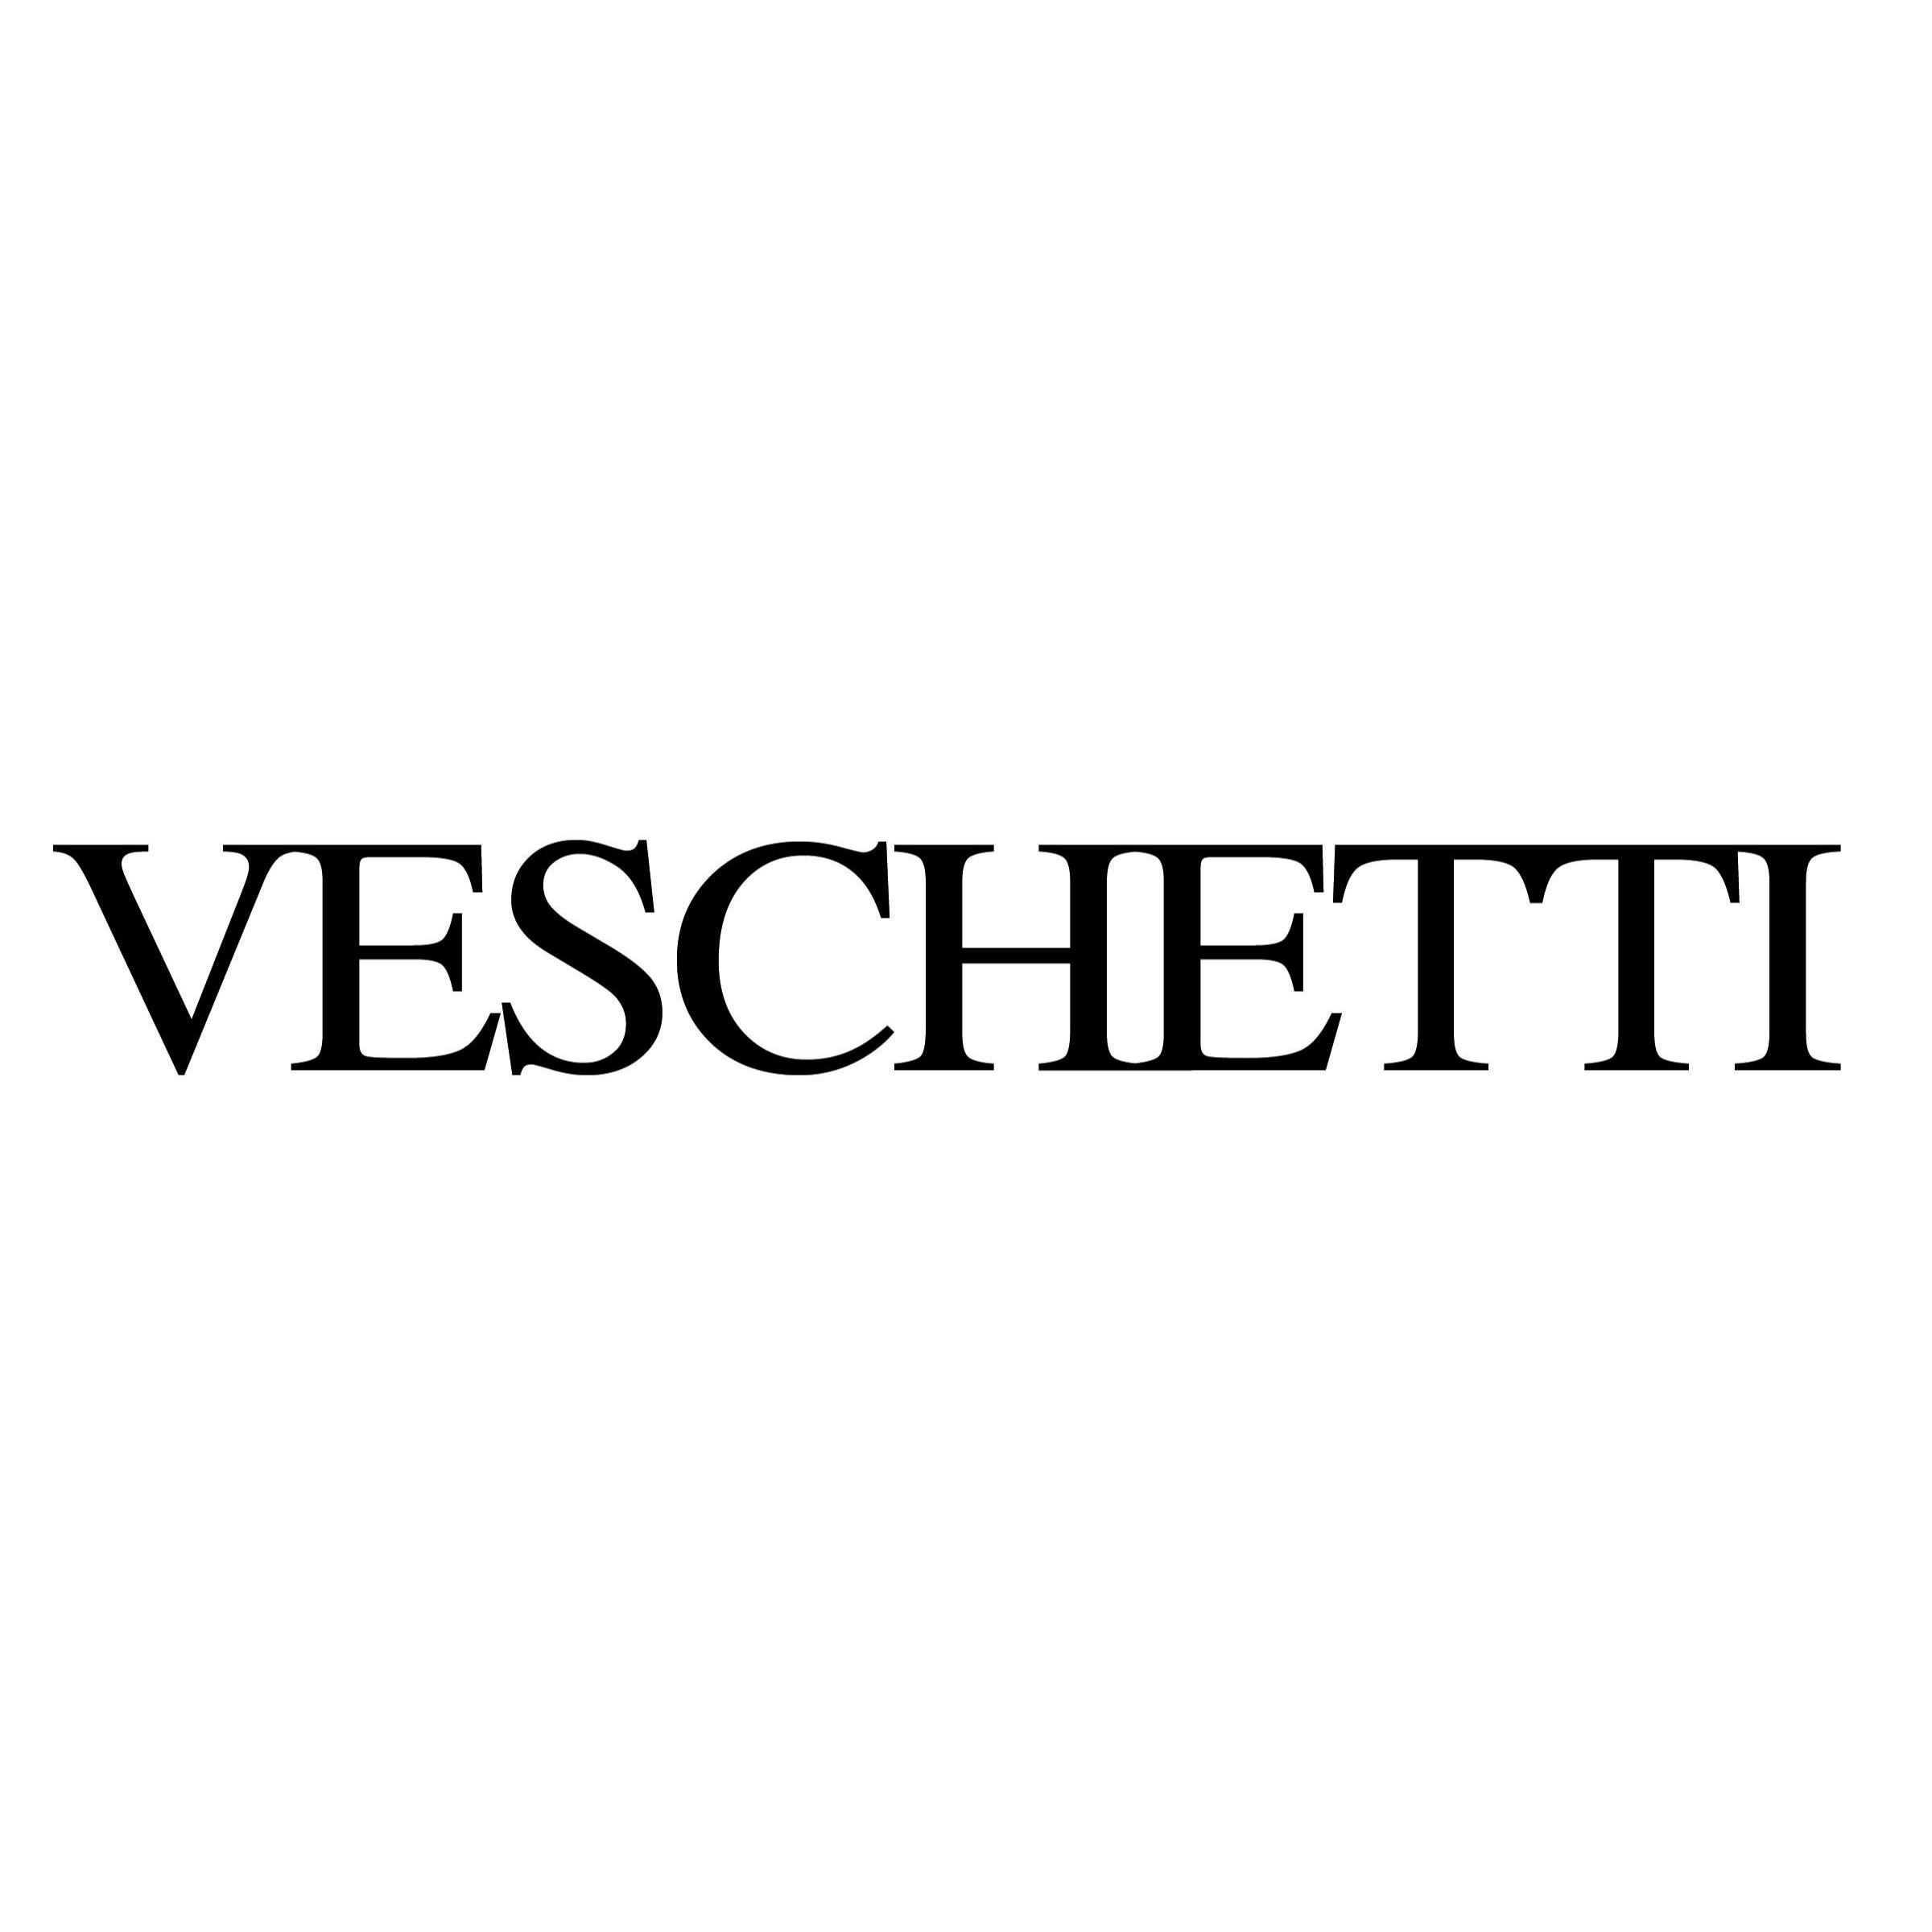 Veschetti Gioielli - Rivenditore Autorizzato Rolex - Orologerie Brescia